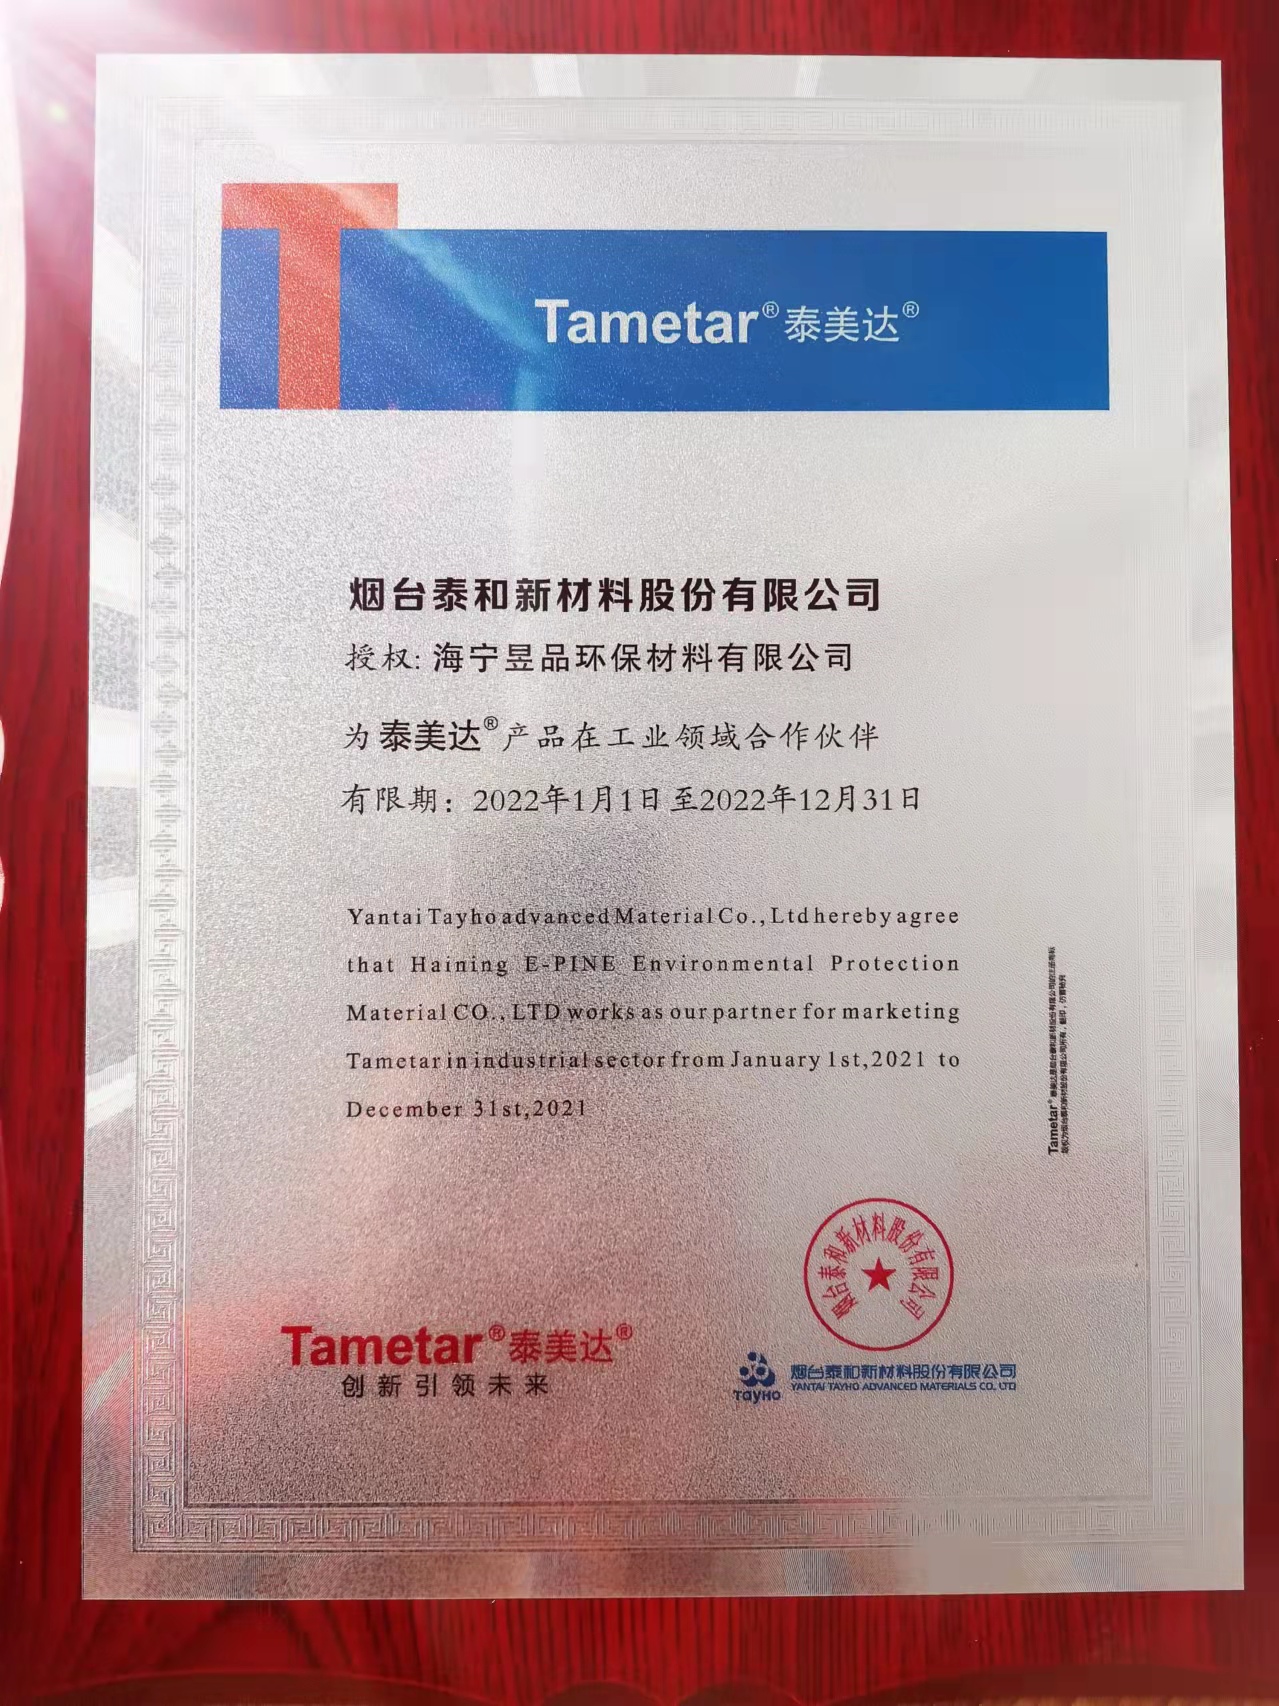 澳门mgm4858美高梅获泰和新材为泰美达®产品在工业领域合作伙伴